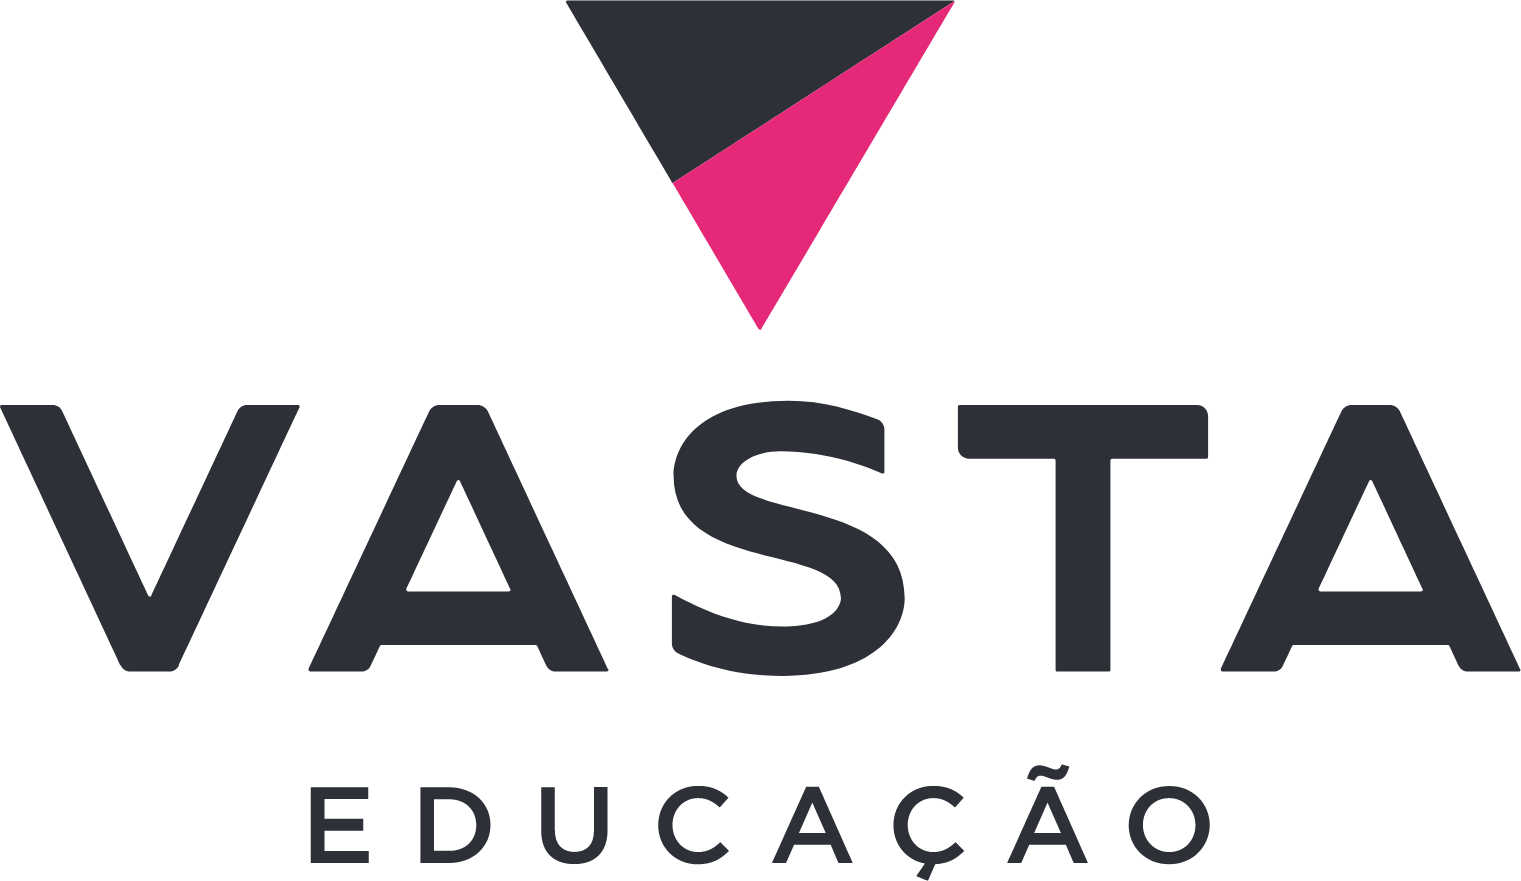 Vasta Platform logo large (transparent PNG)